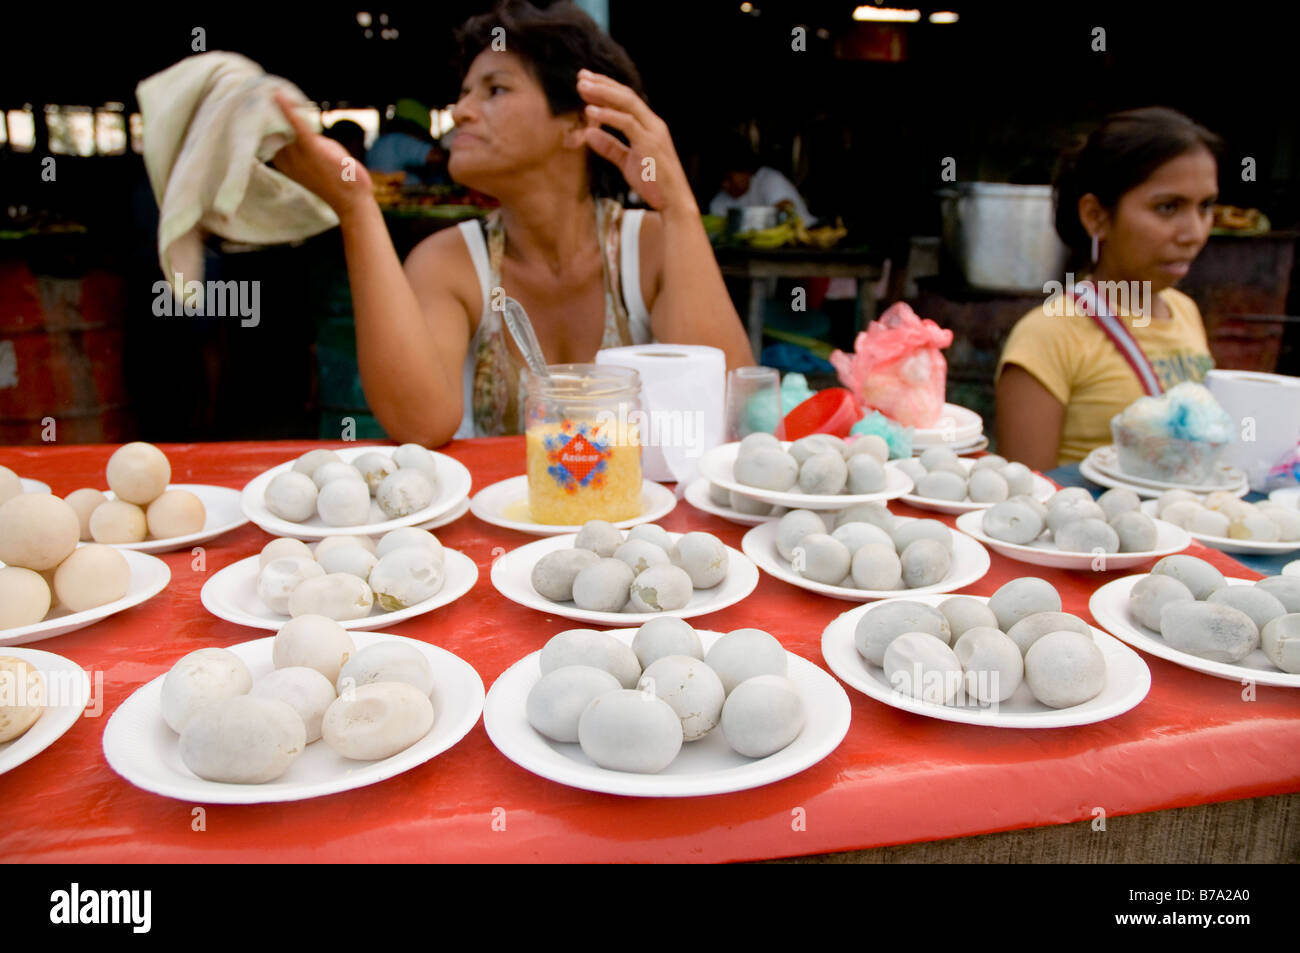 Amazon River turtle eggs for sale Bellavista, Nanay market Iquitos Peruvian Amazon Peru Stock Photo